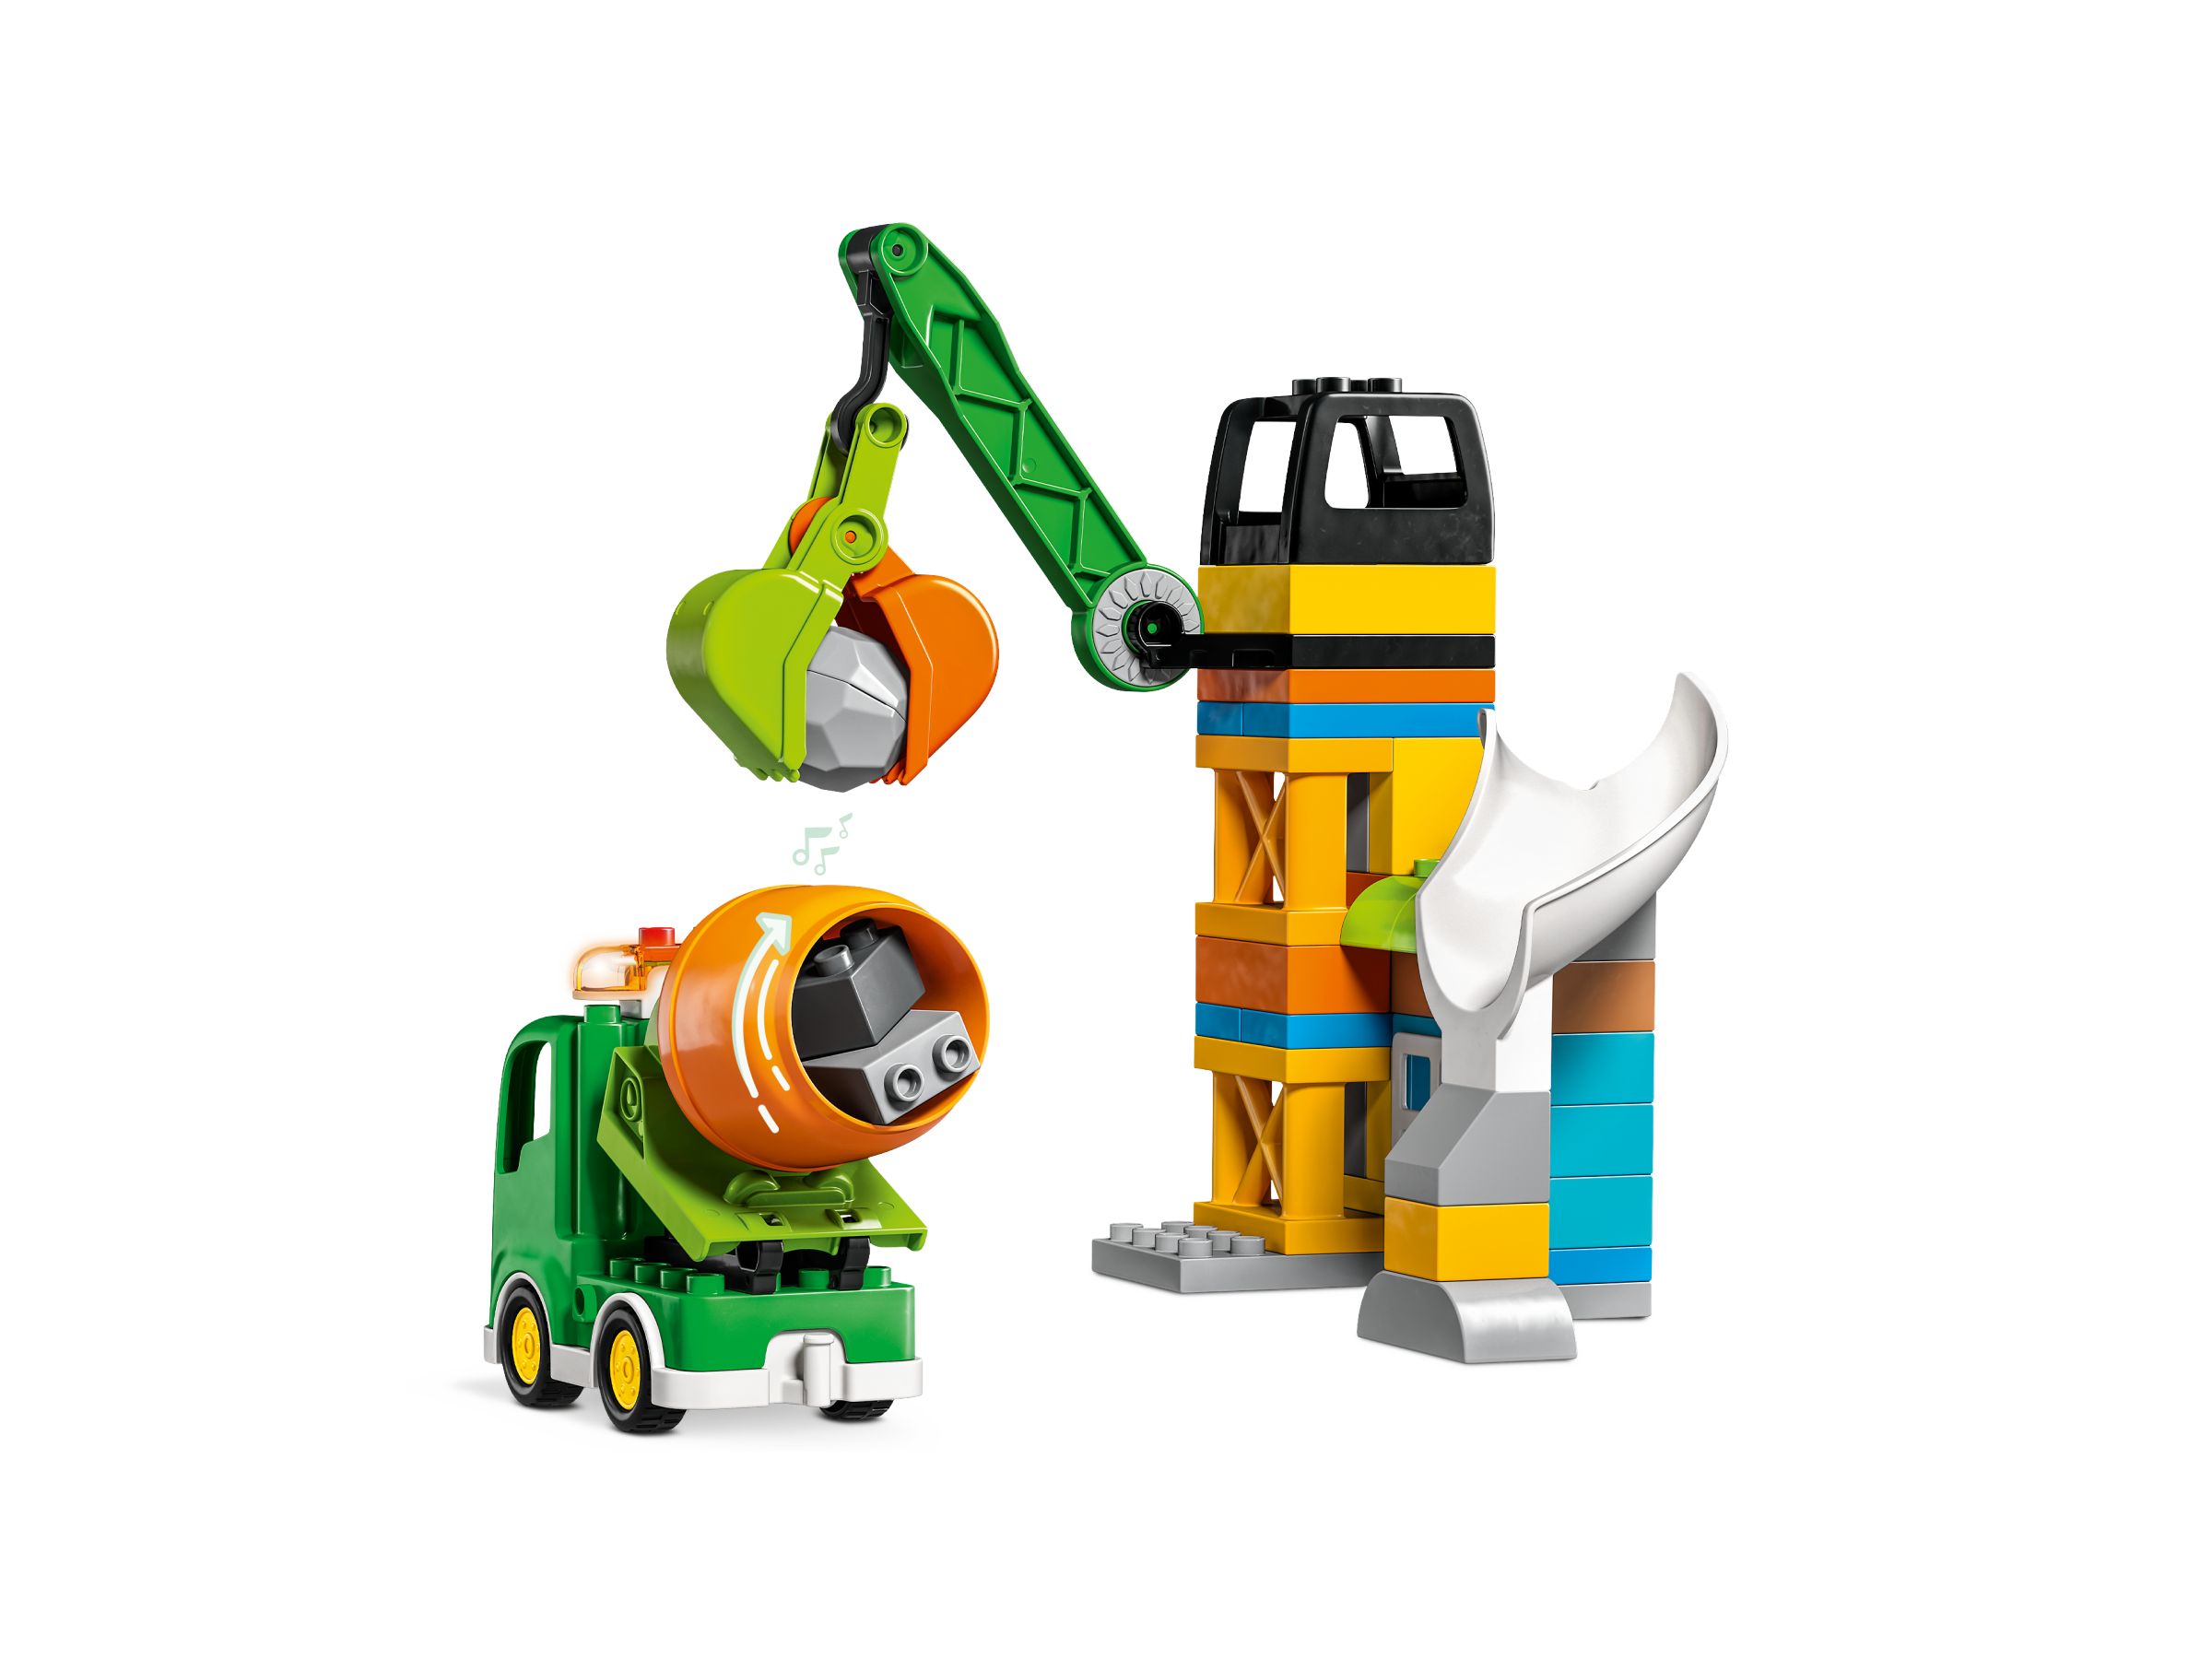 LEGO Duplo 10990 Baustelle mit Baufahrzeugen LEGO_10990_alt3.jpg